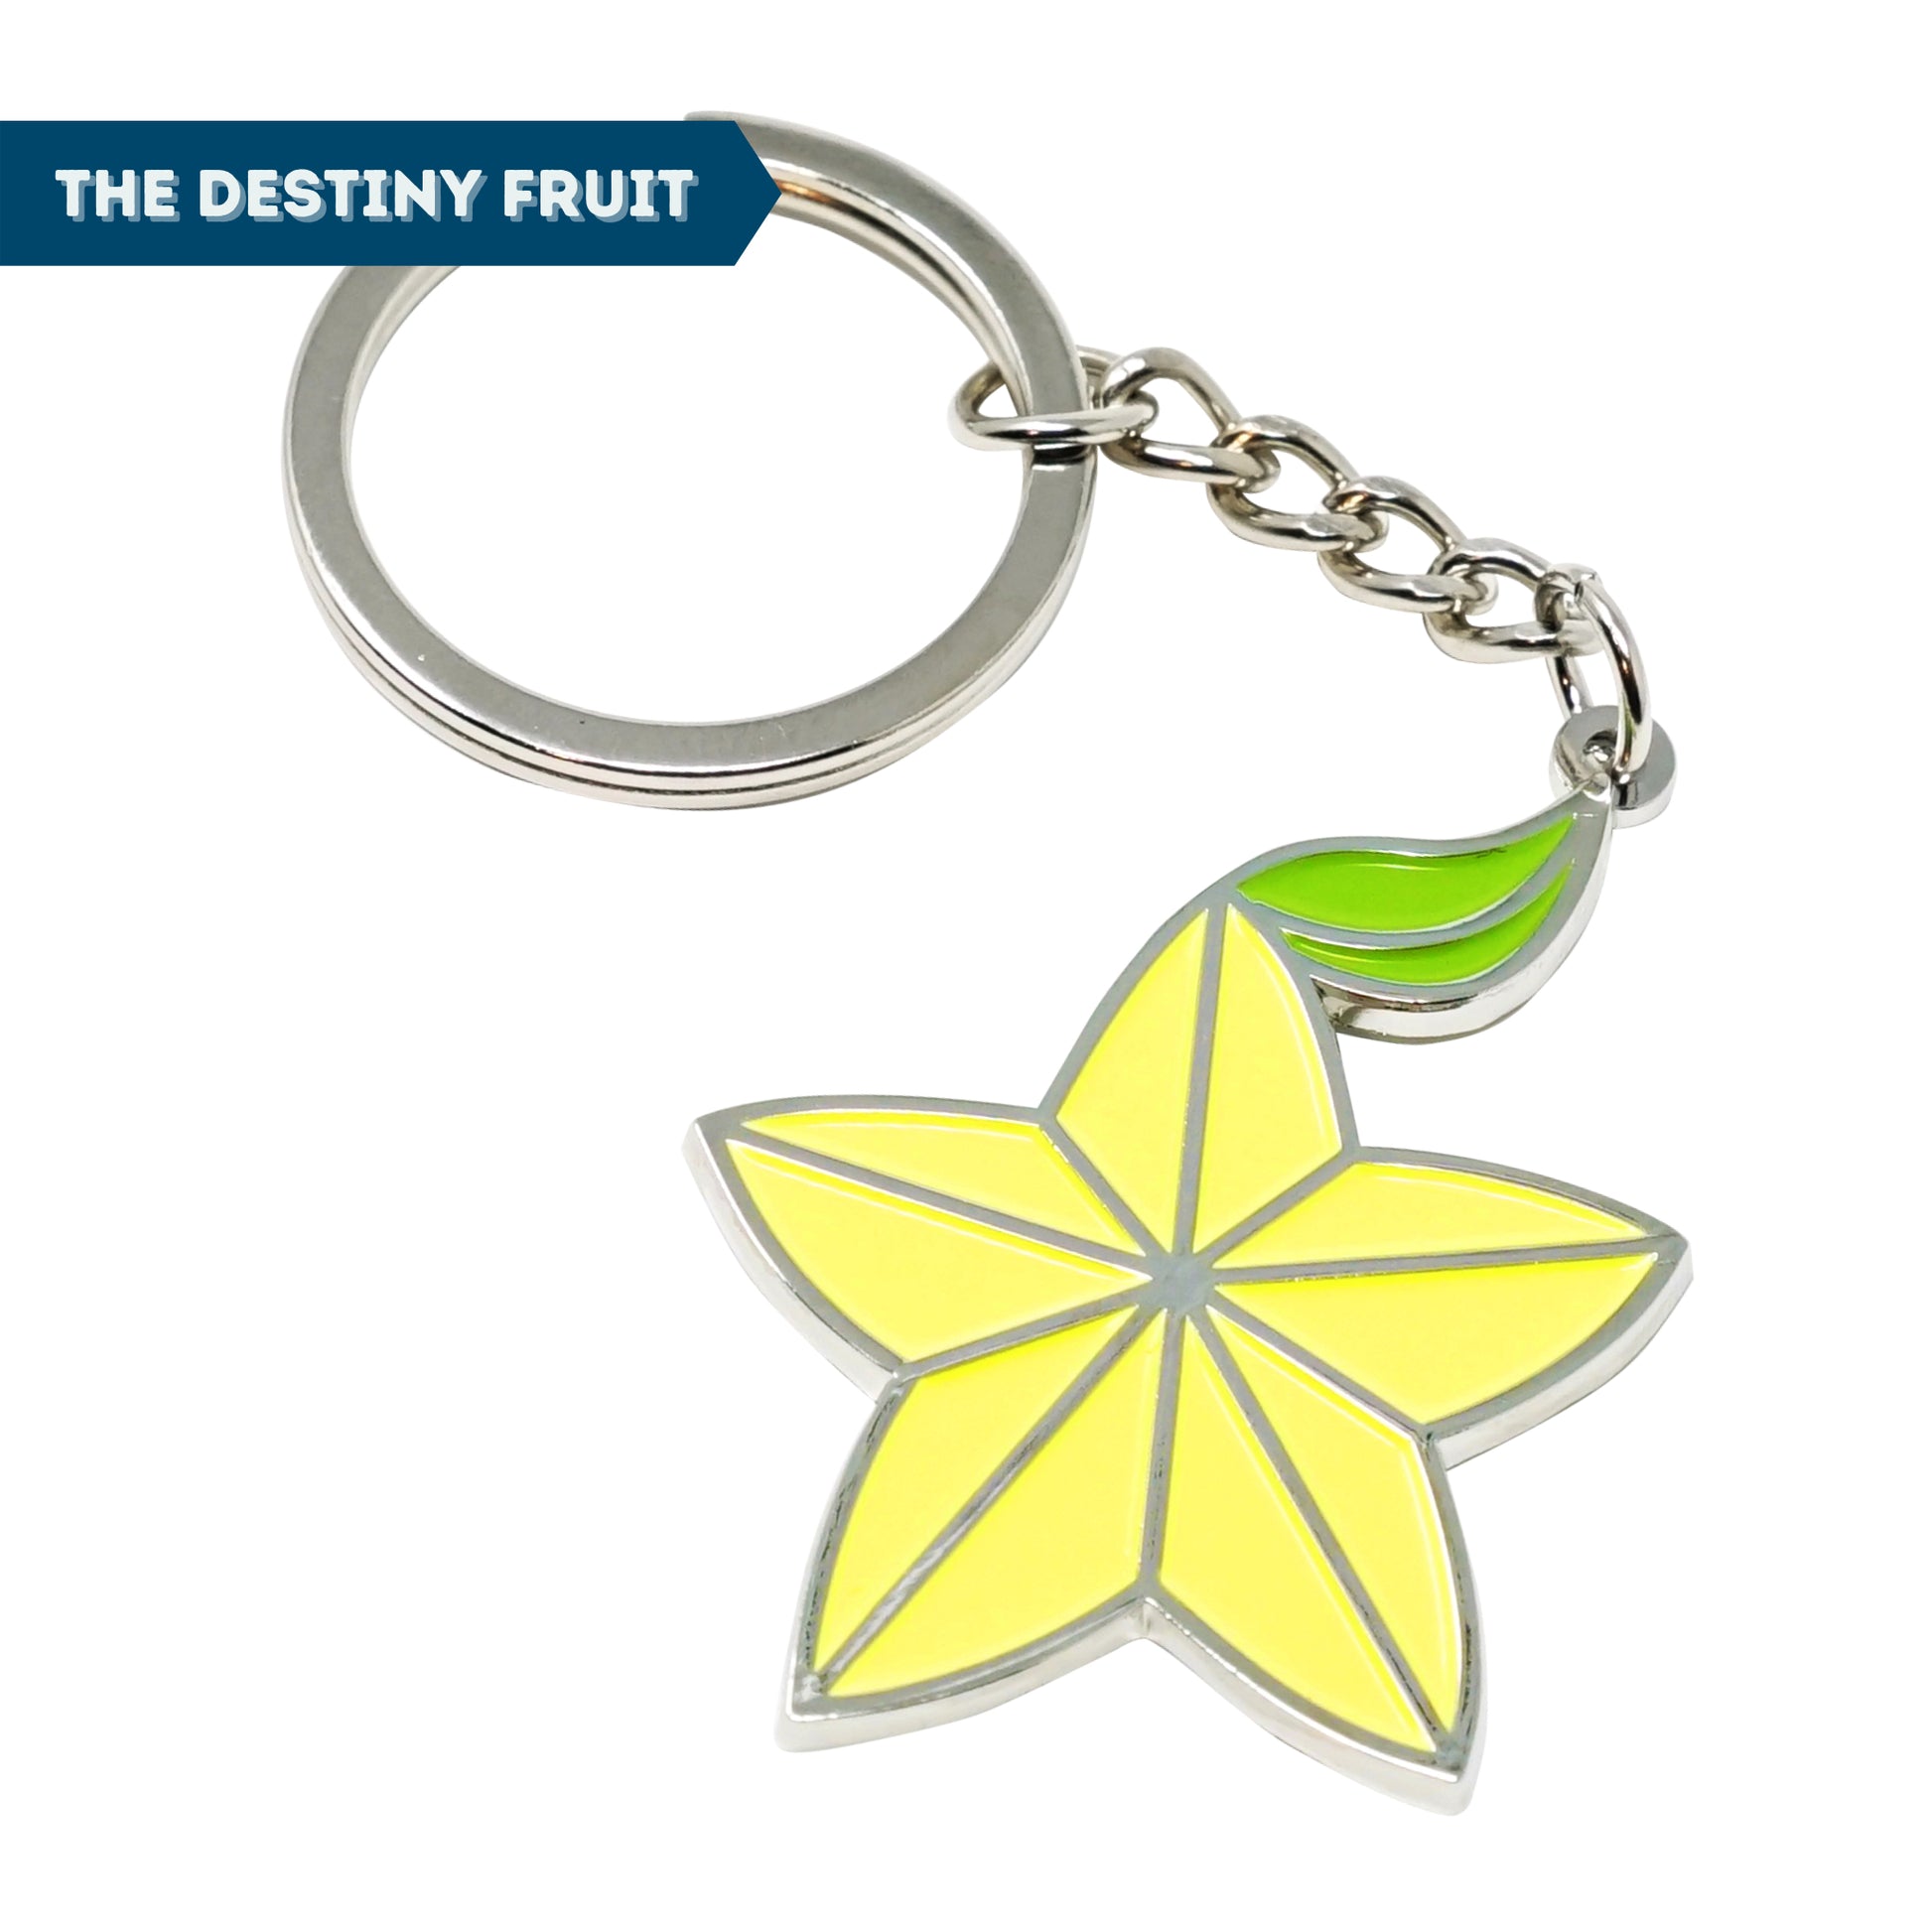 Kingdom Key USB + Destiny Fruit